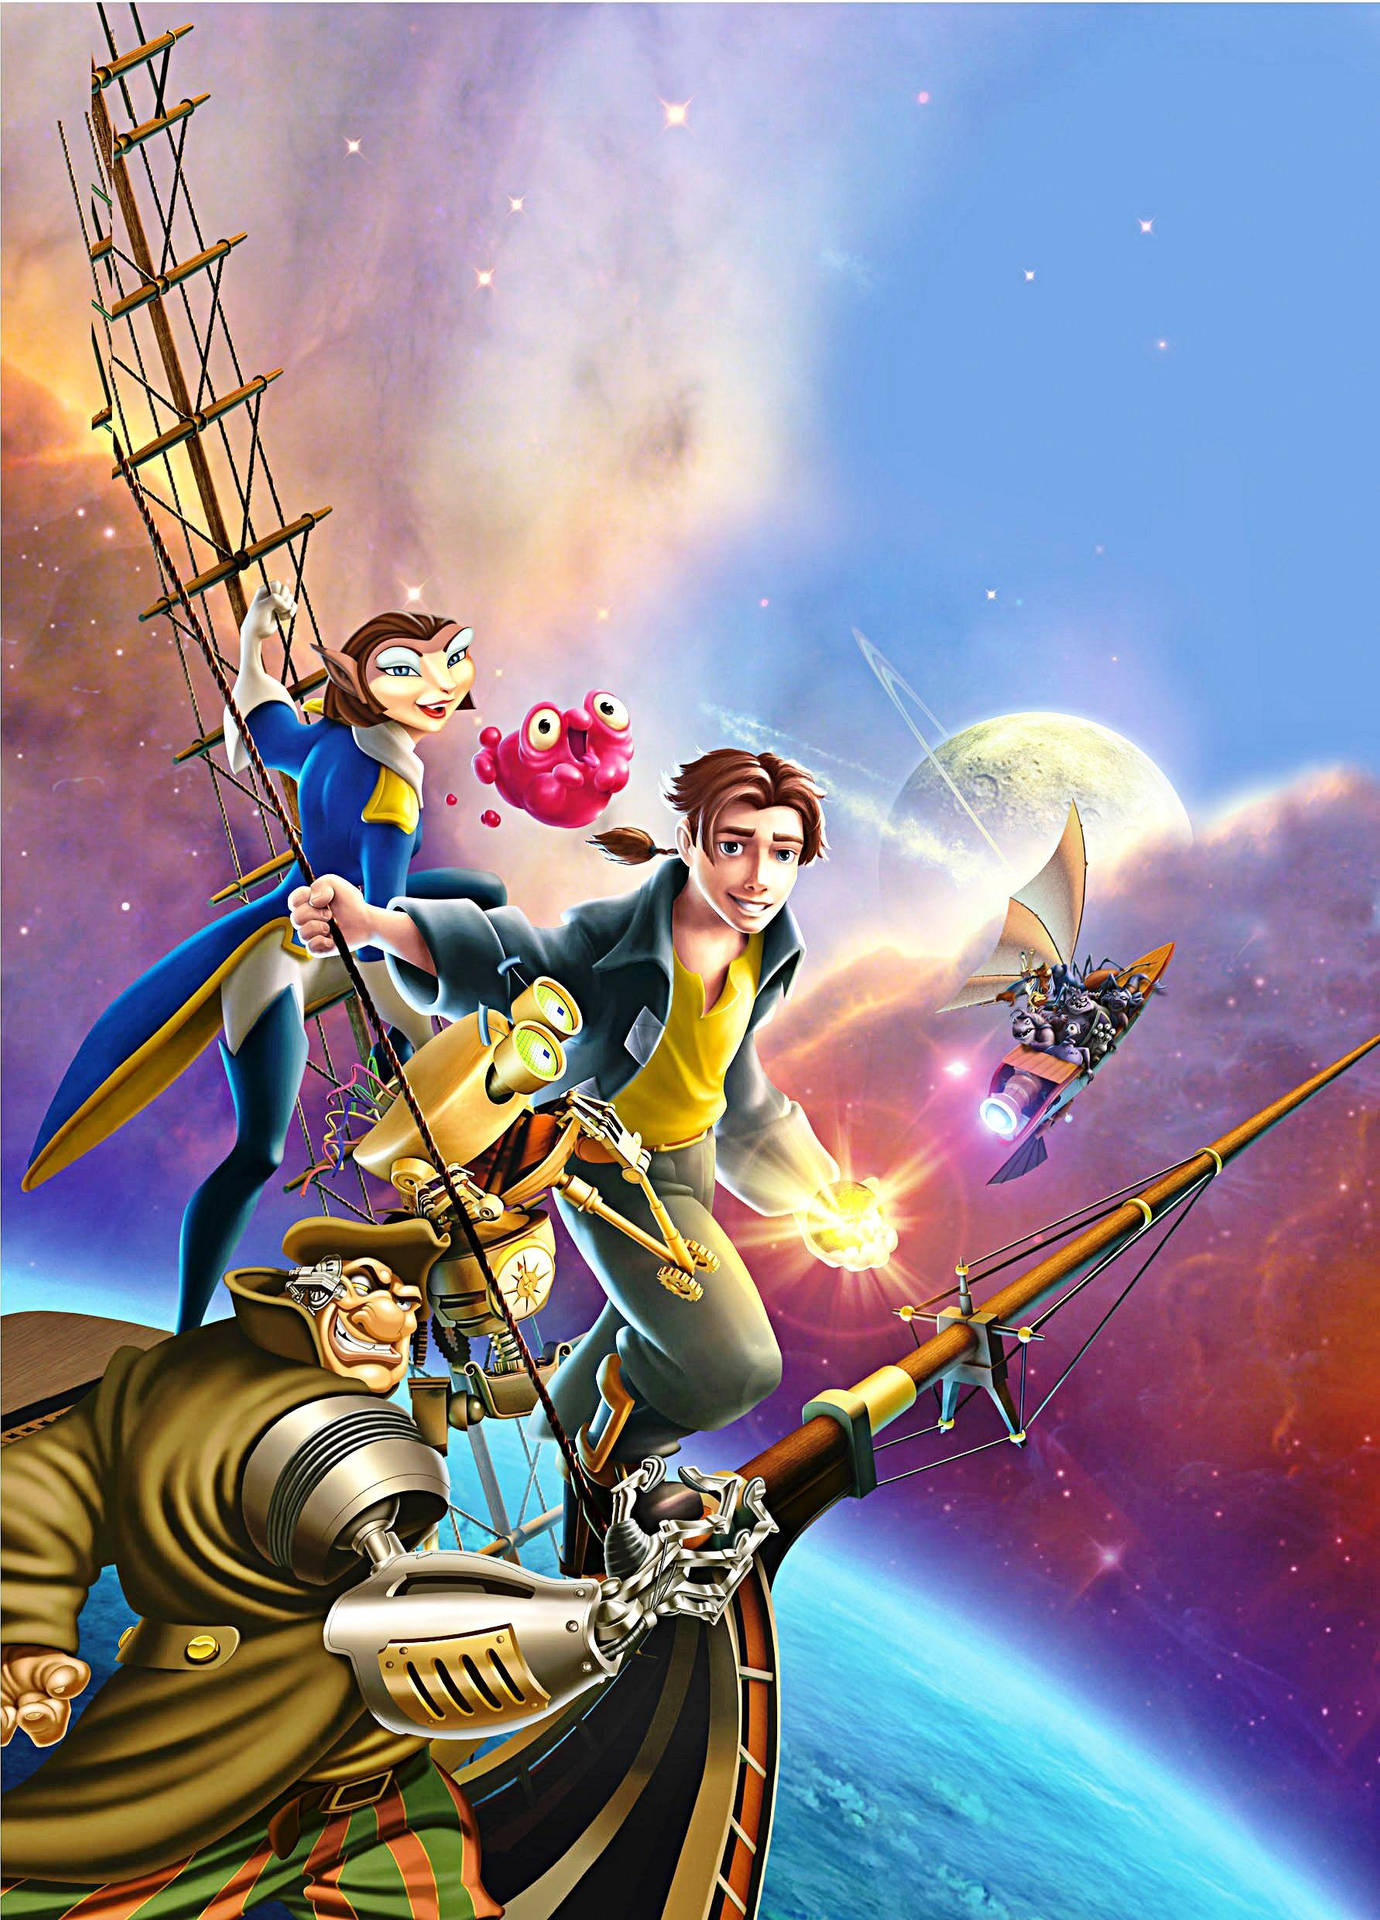 Personagensde Treasure Planet No Figurão Do Navio. Papel de Parede